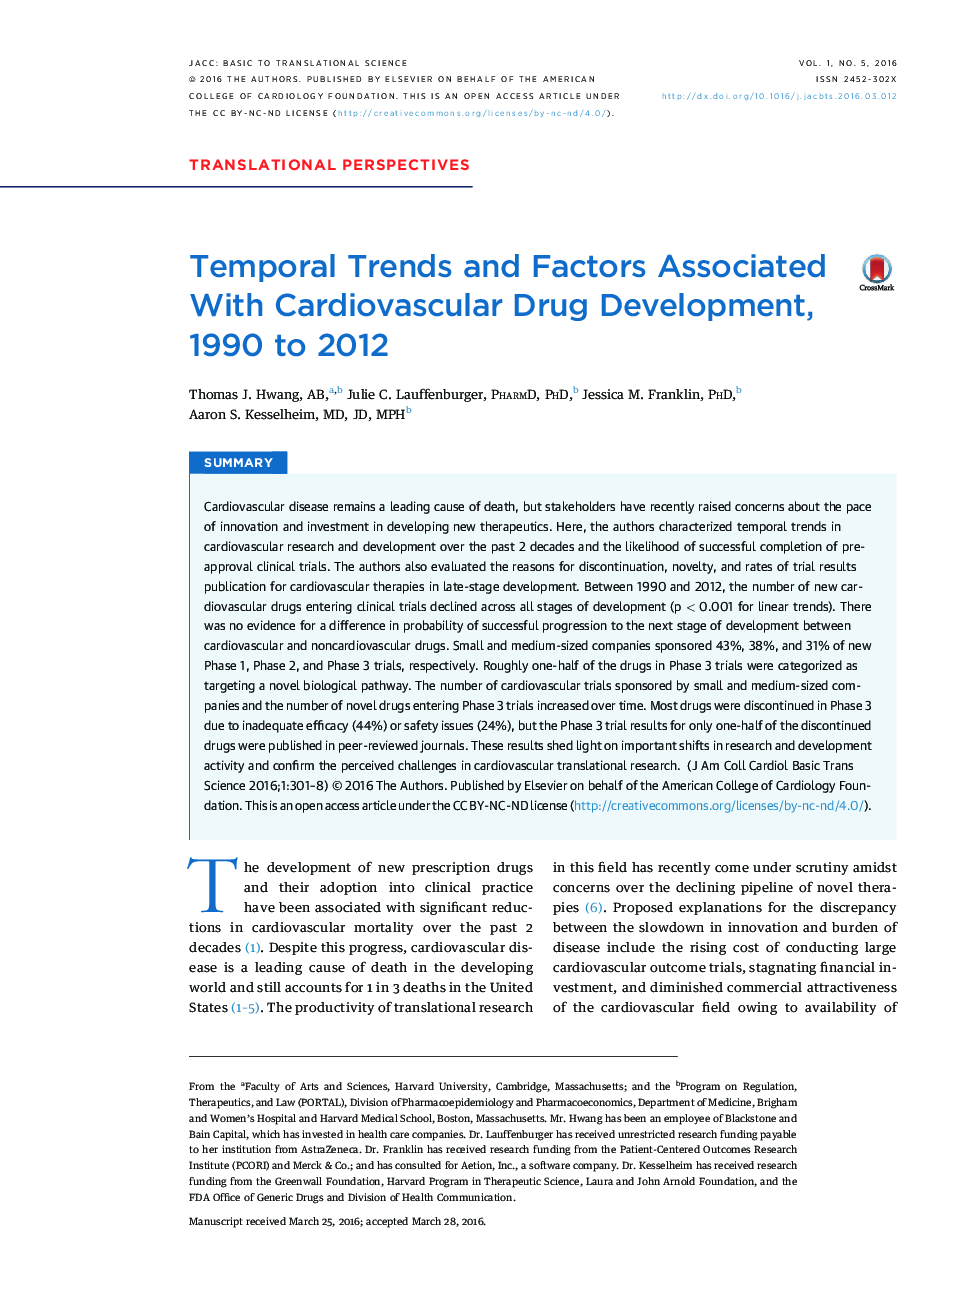 روند زمانی و عوامل مرتبط با توسعه داروهای قلب و عروق، 1990 تا 2012 